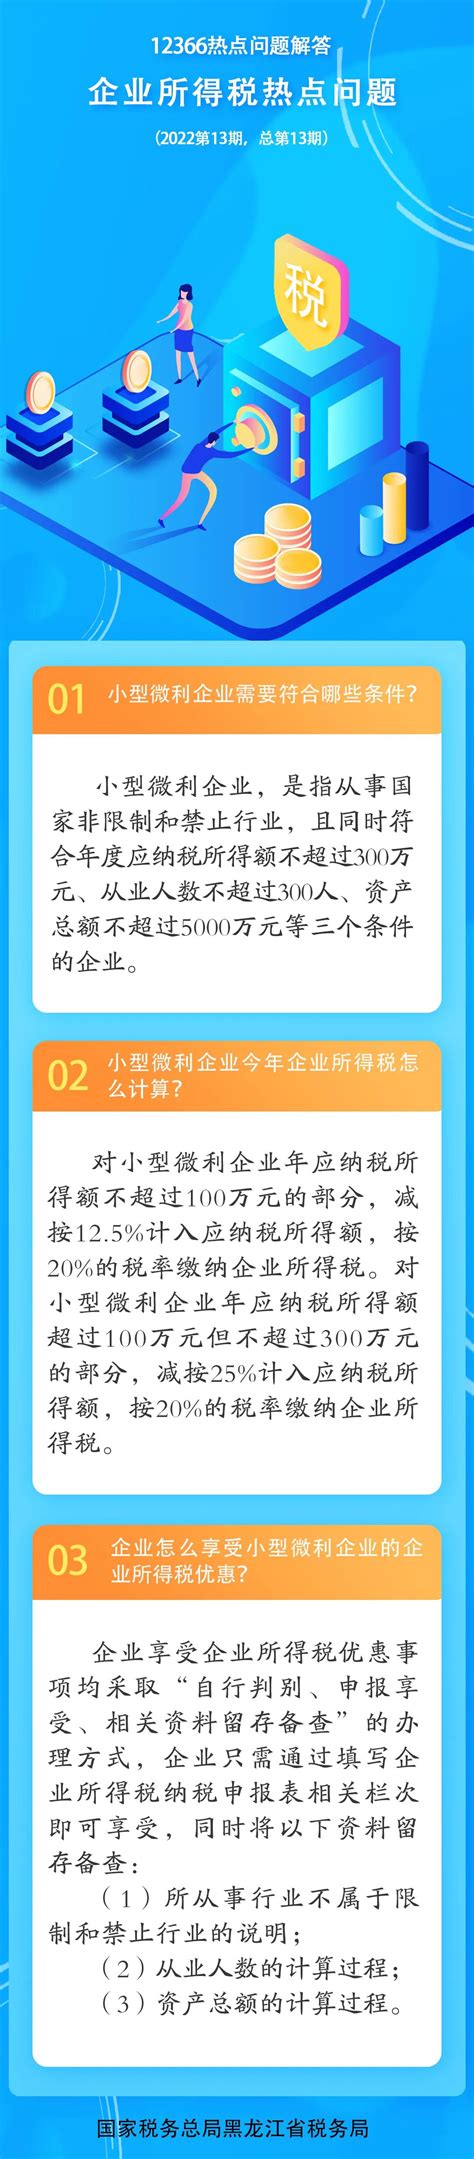 国家税务总局黑龙江省税务局 图解税收 12366热点问题解答——企业所得税热点问题